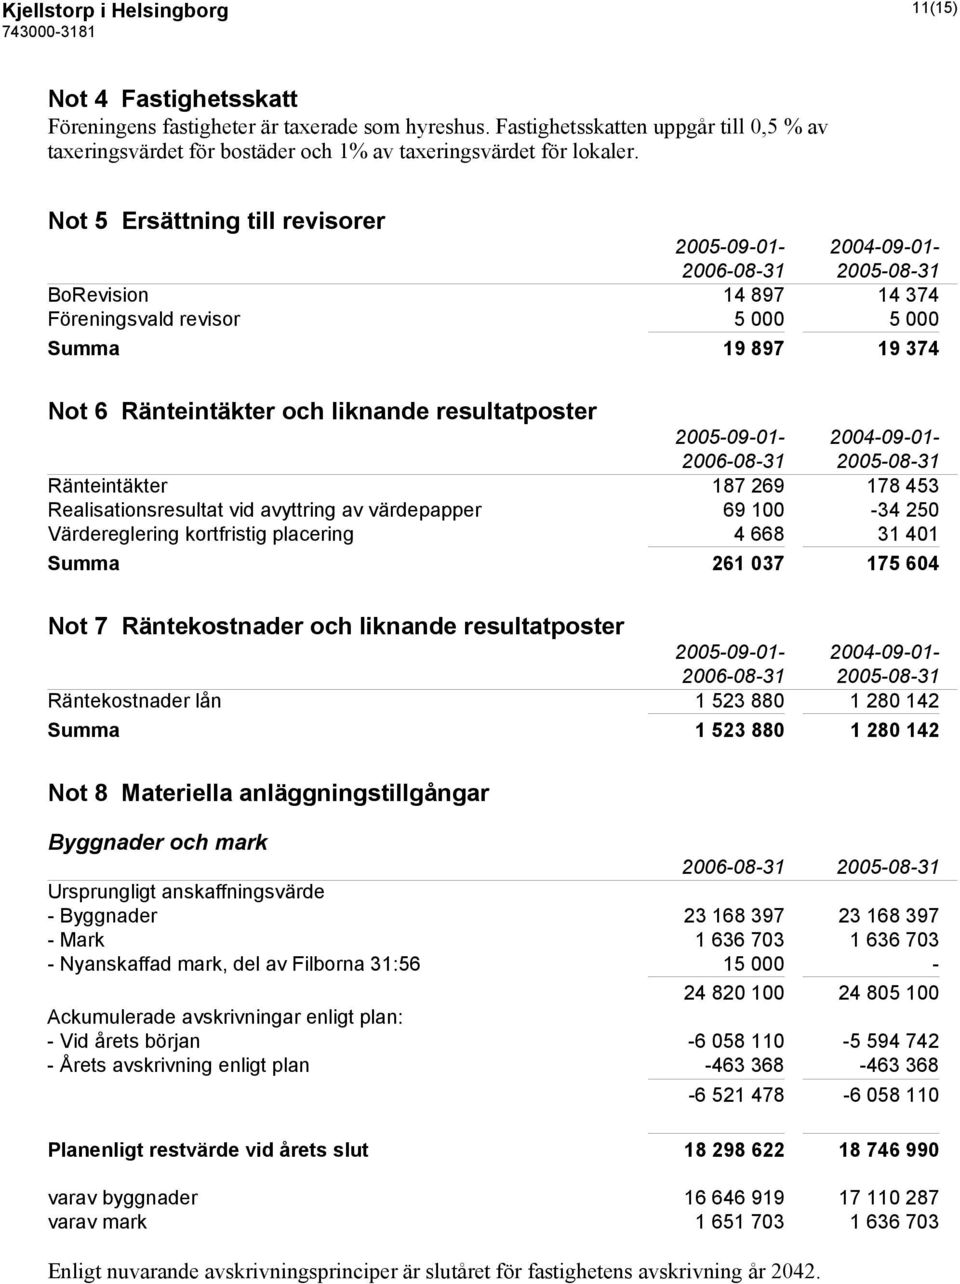 Not 5 Ersättning till revisorer 2005-09-01-2004-09-01- BoRevision 14 897 14 374 Föreningsvald revisor 5 000 5 000 Summa 19 897 19 374 Not 6 Ränteintäkter och liknande resultatposter